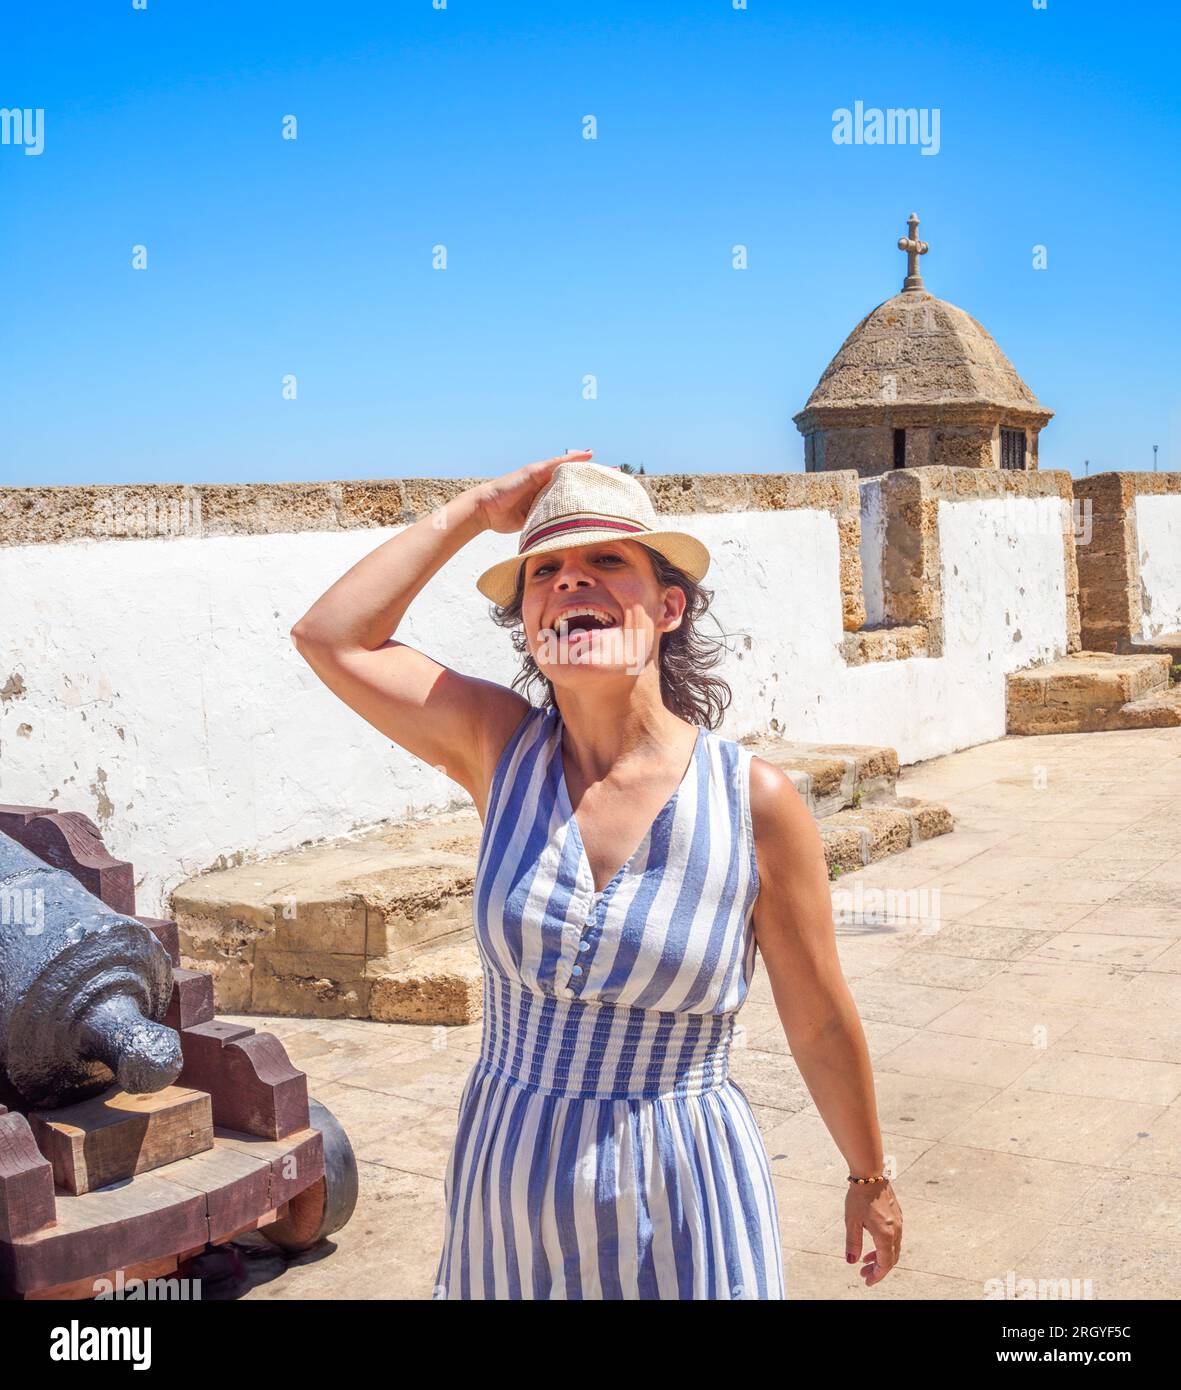 Lächelnder kaukasischer Tourist, der ein Sommerkleid und einen alten Strohhut trägt und auf einer antiken Latinamerikanischen Yachthafenpromenade spaziert. Stockfoto